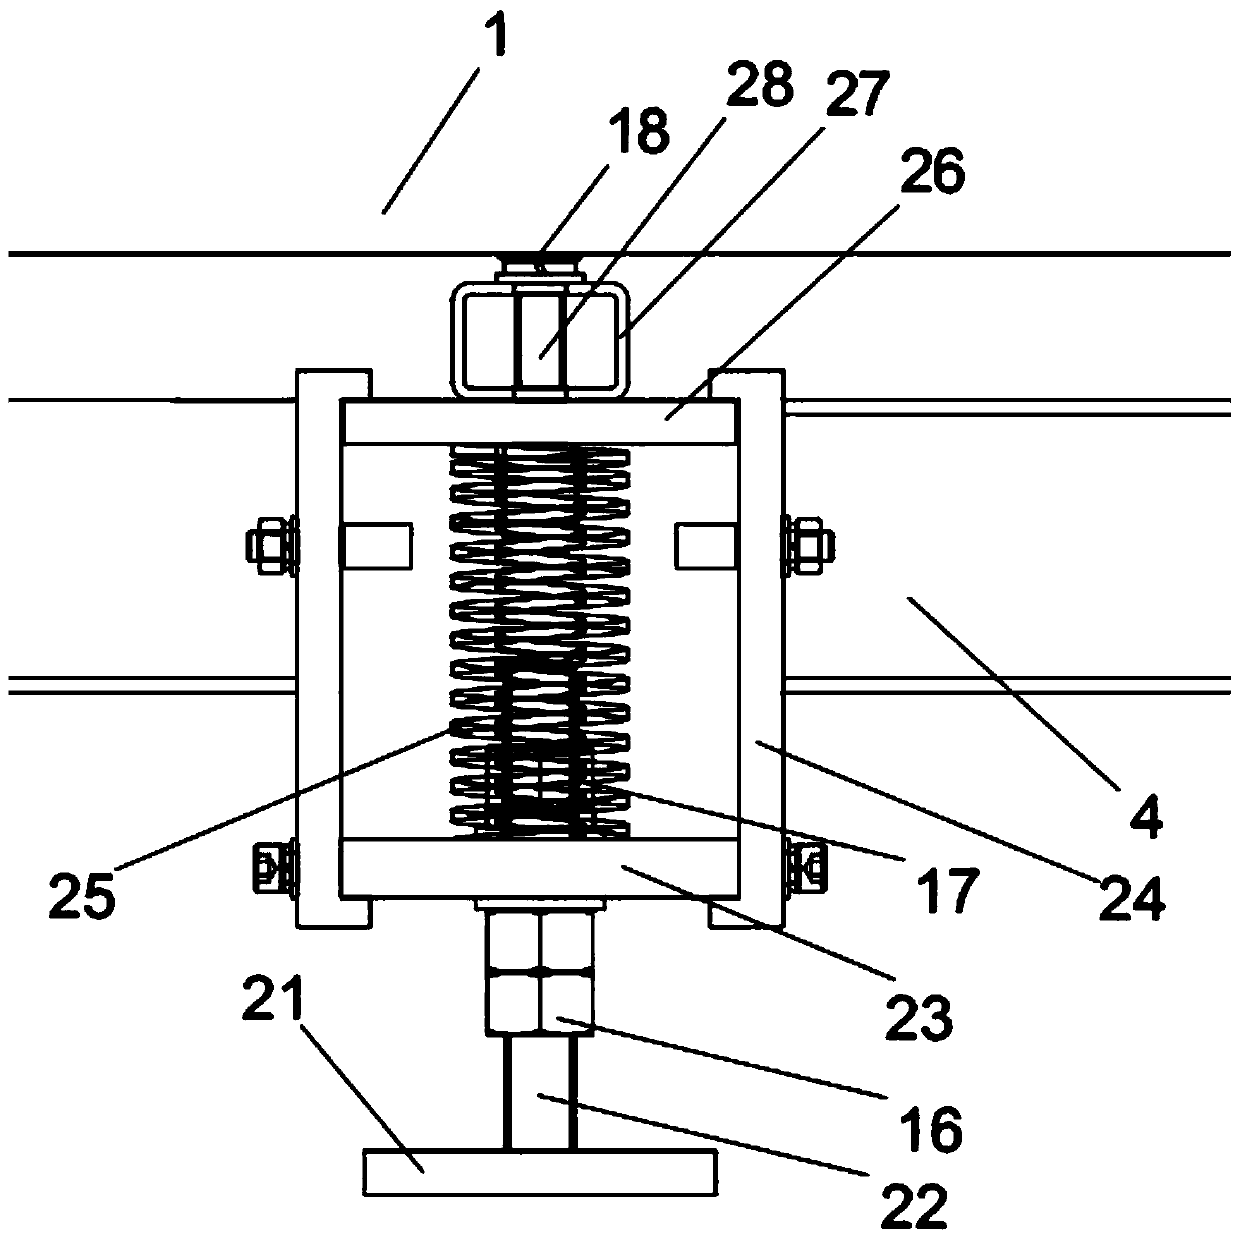 Part discharging roller machine